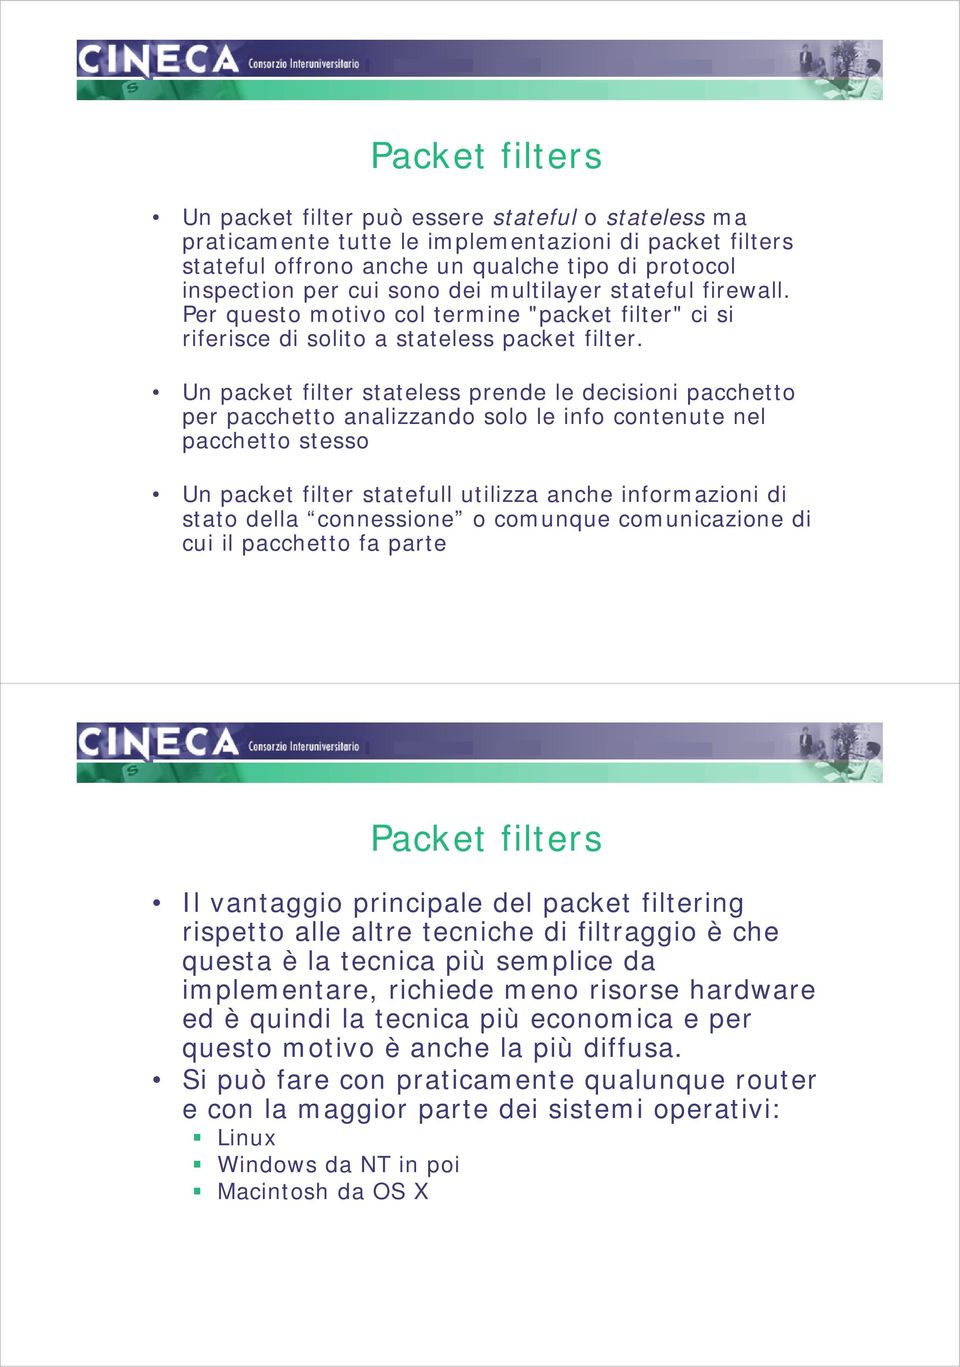 Un packet filter stateless prende le decisioni pacchetto per pacchetto analizzando solo le info contenute nel pacchetto stesso Un packet filter statefull utilizza anche informazioni di stato della